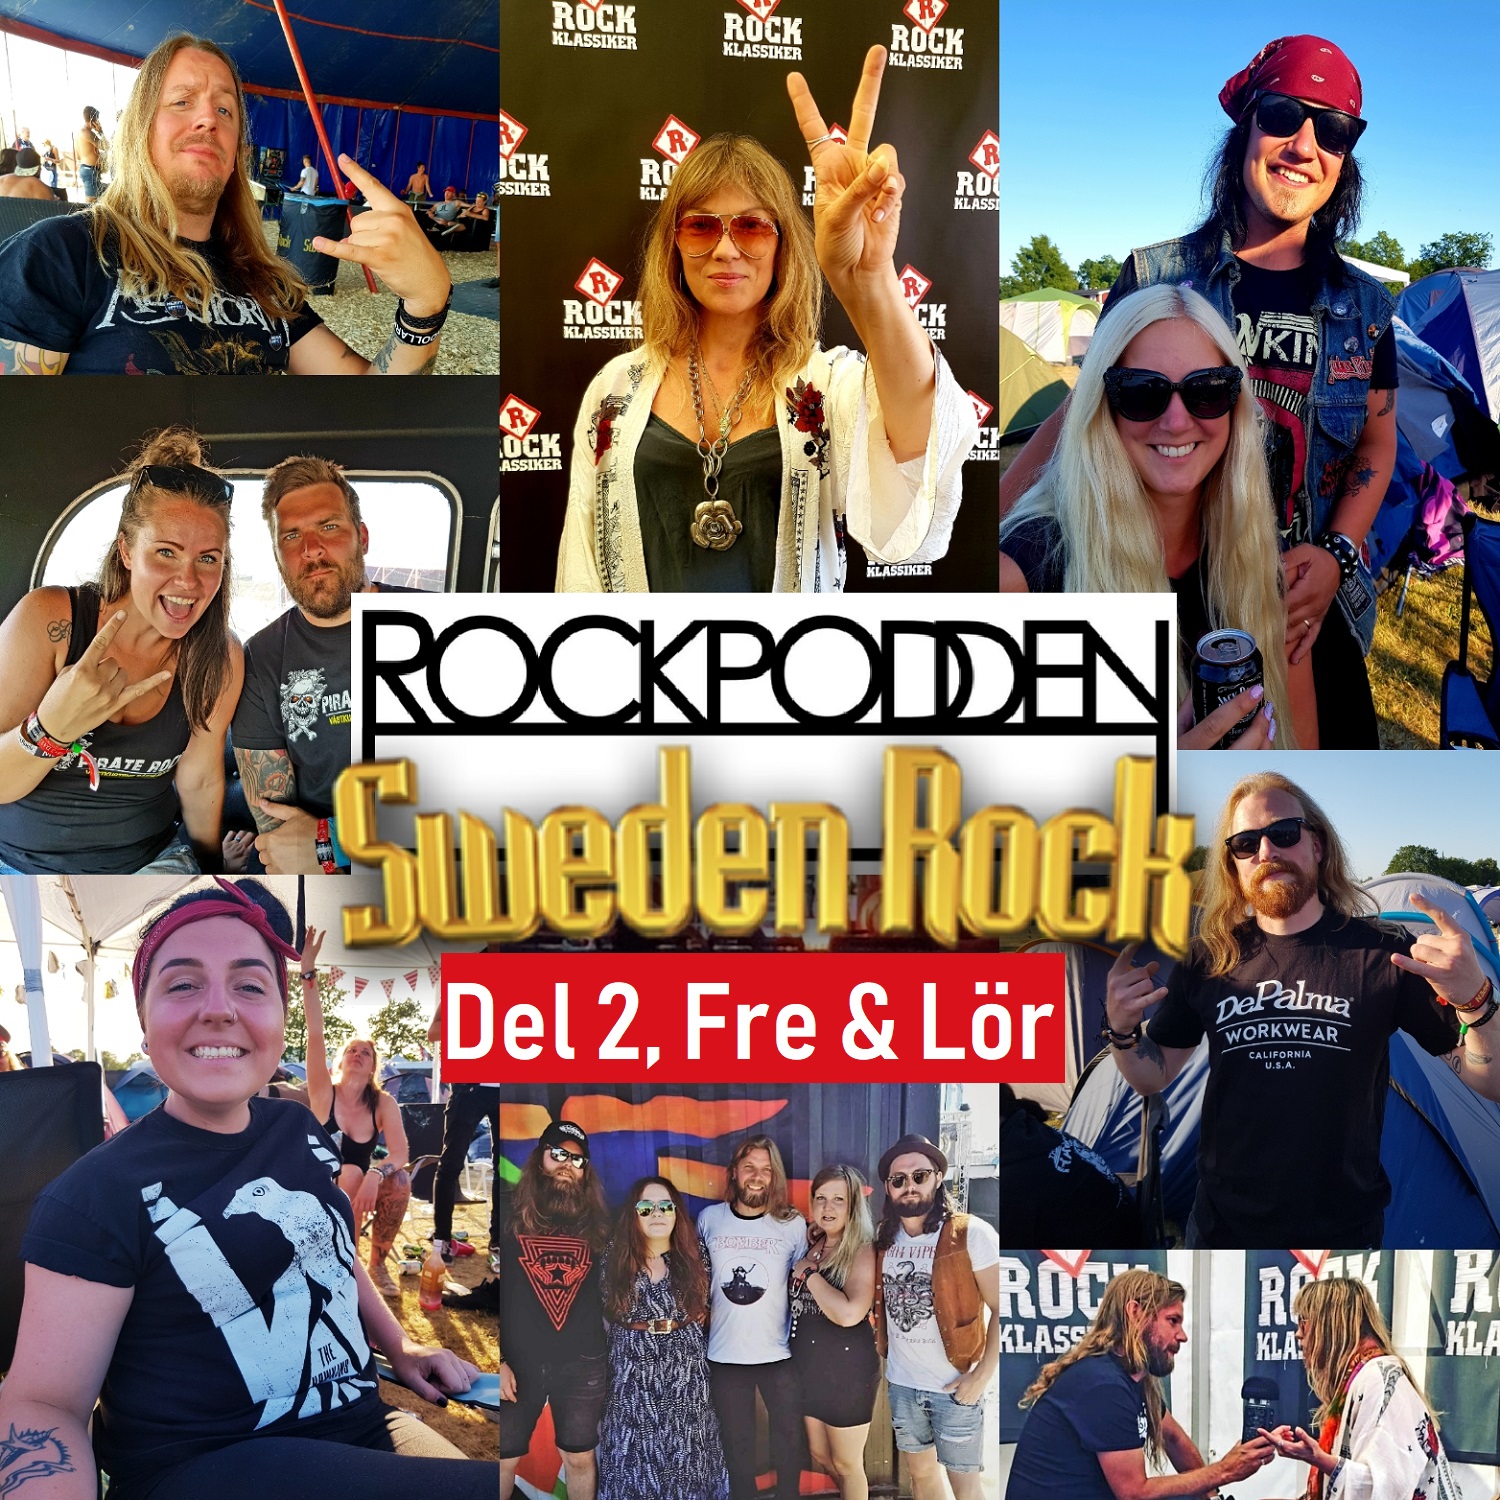 ROCKPODDEN #94 Sweden Rock Special, del 2. Fre - Lör